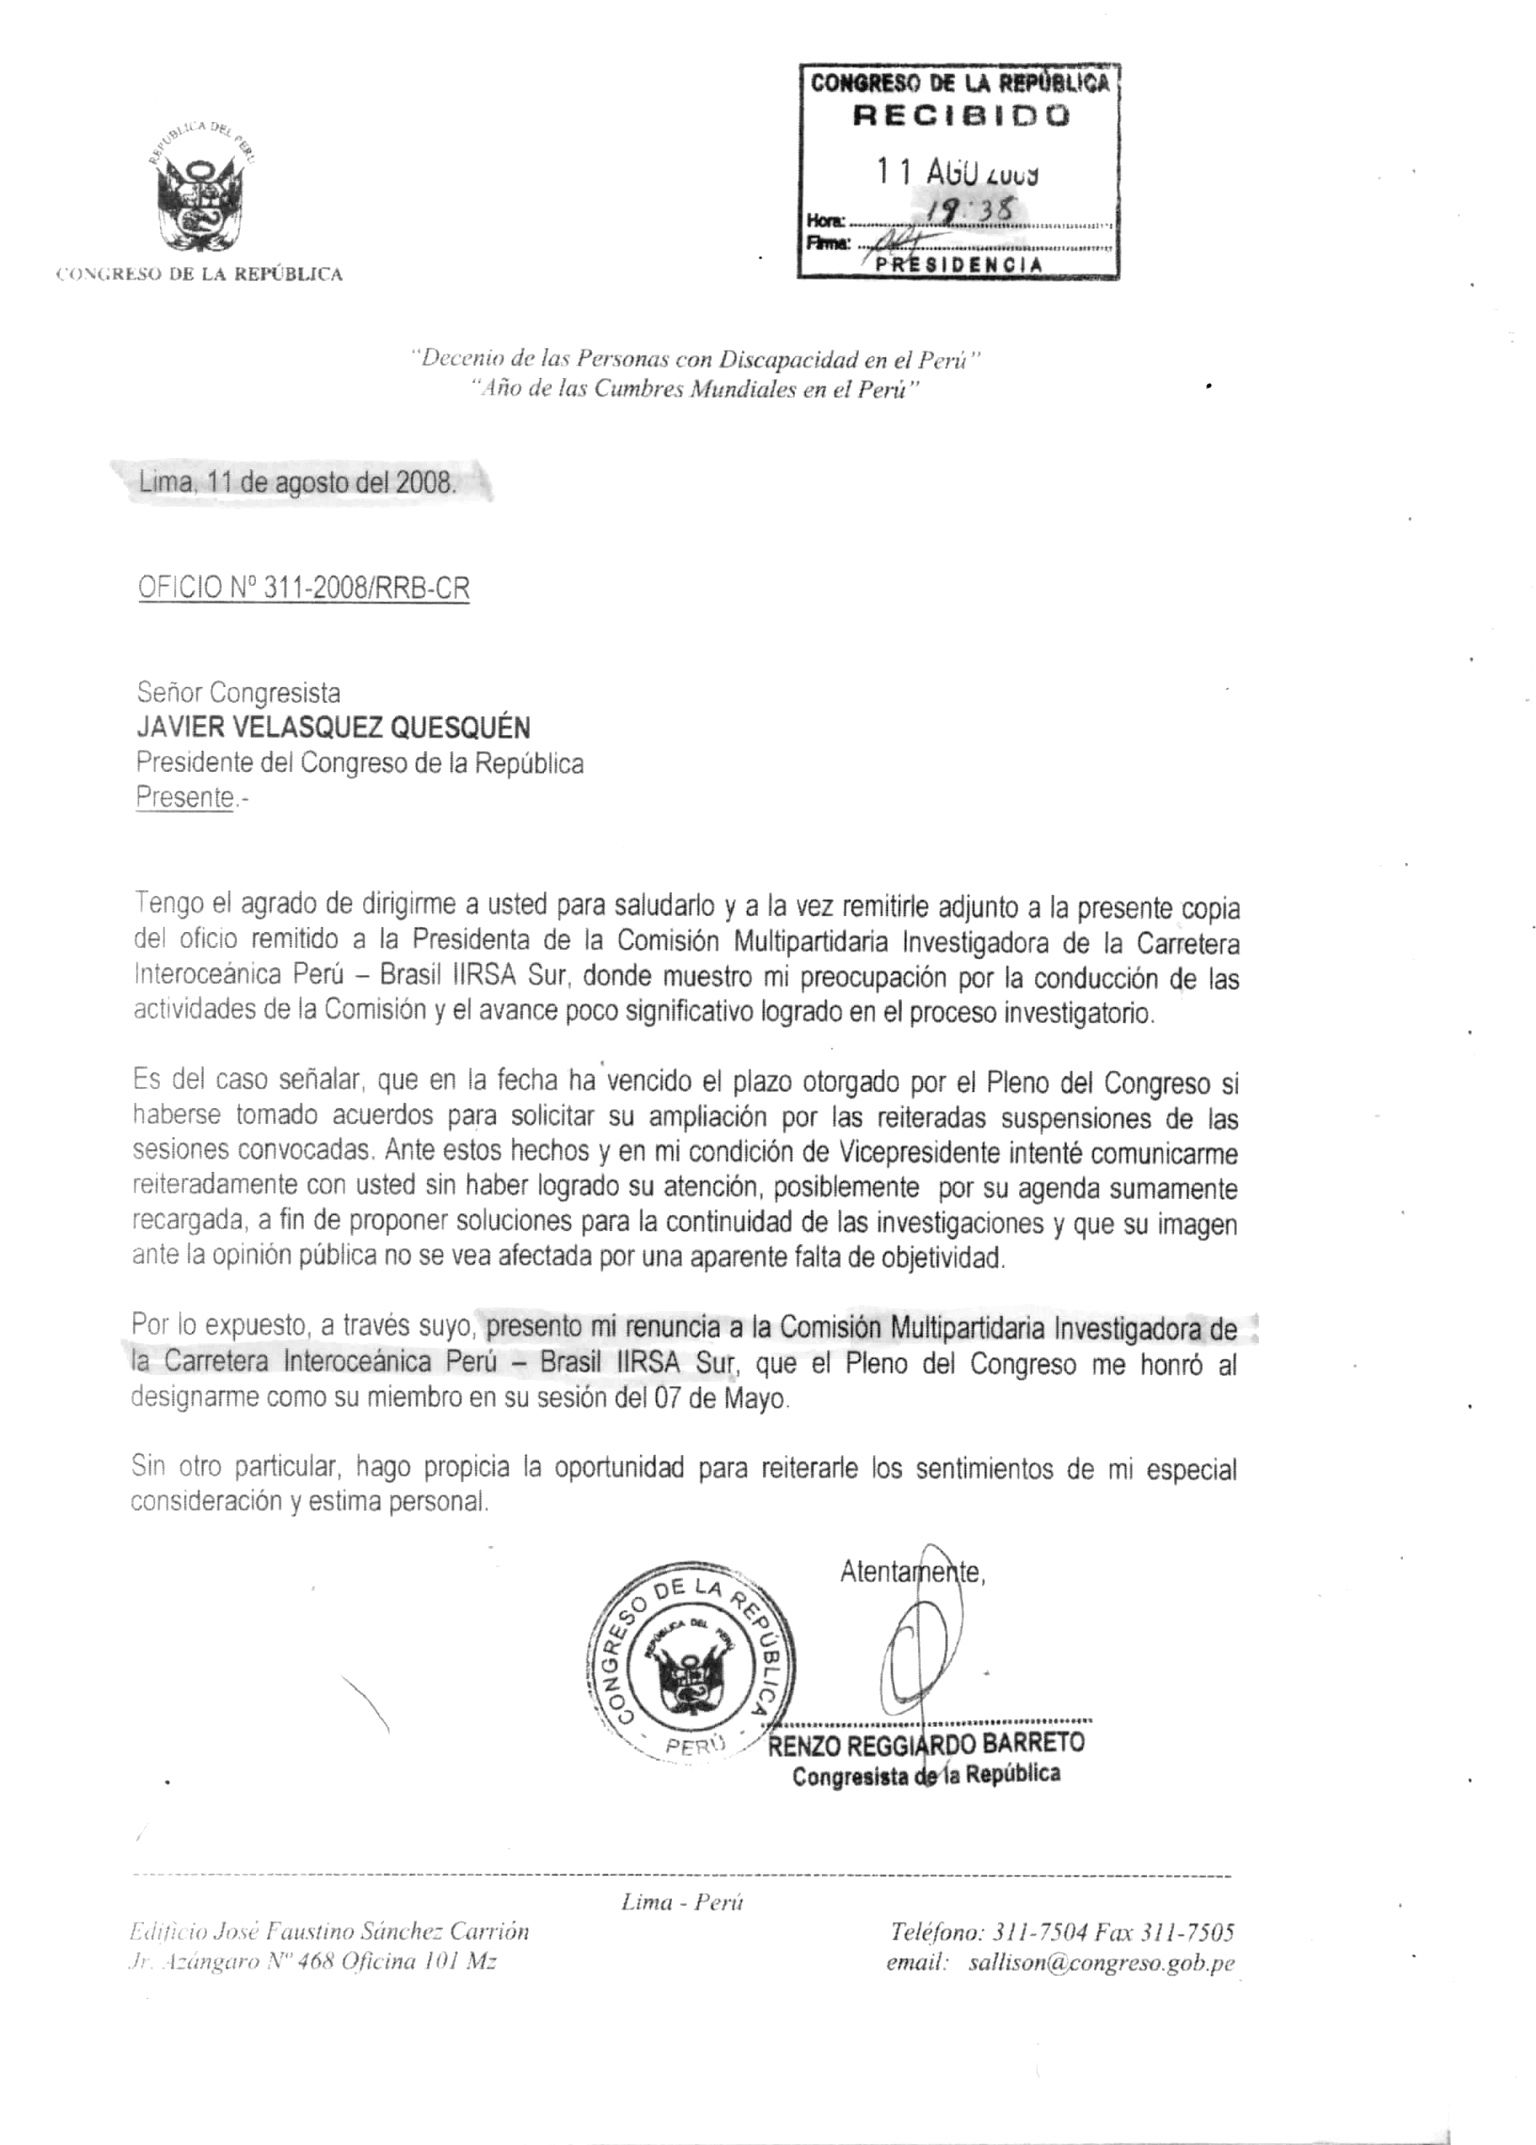 La carta de renuncia de Renzo Reggiardo a la comisión investigadora. (Fuente: El Comercio)